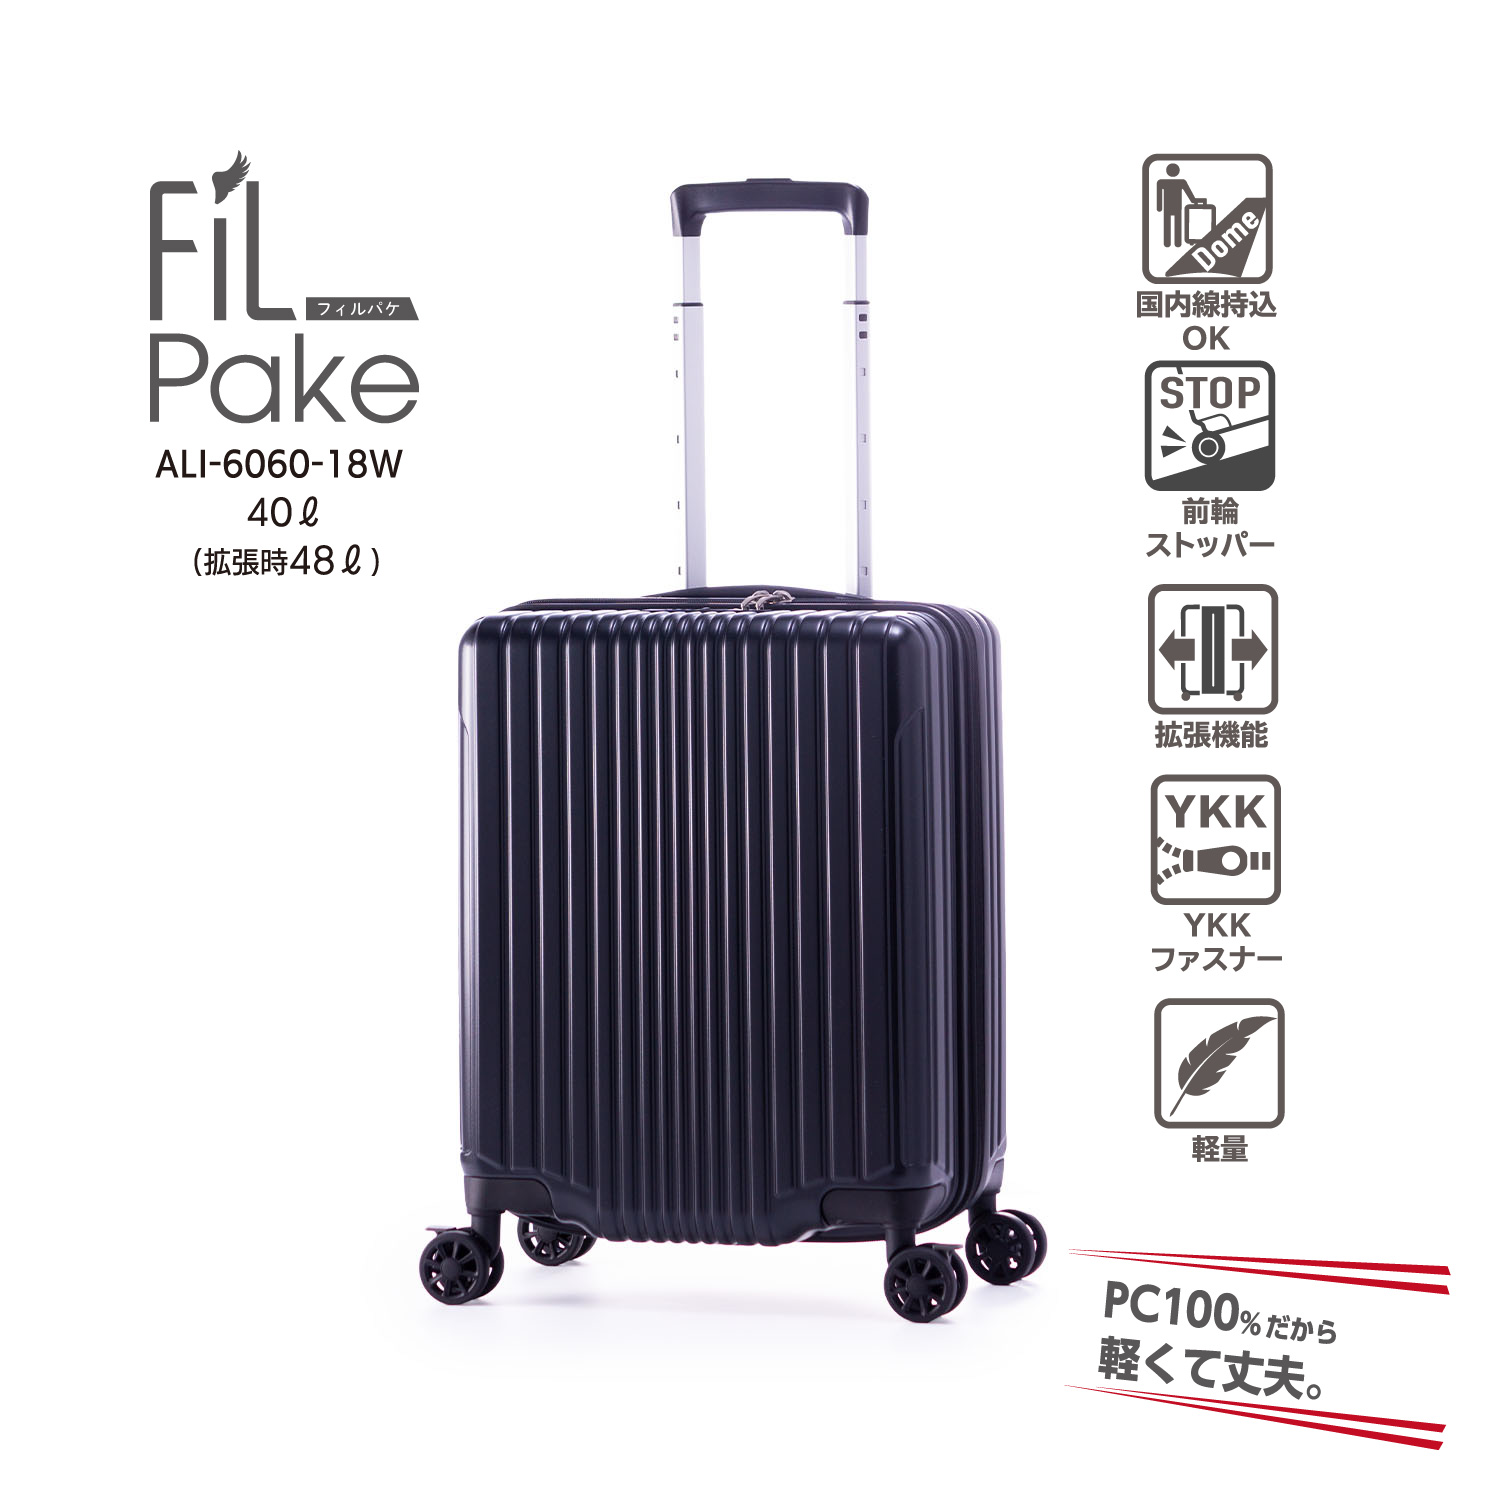 拡張 | アジア・ラゲージ 公式サイト | Asia Luggage Inc.